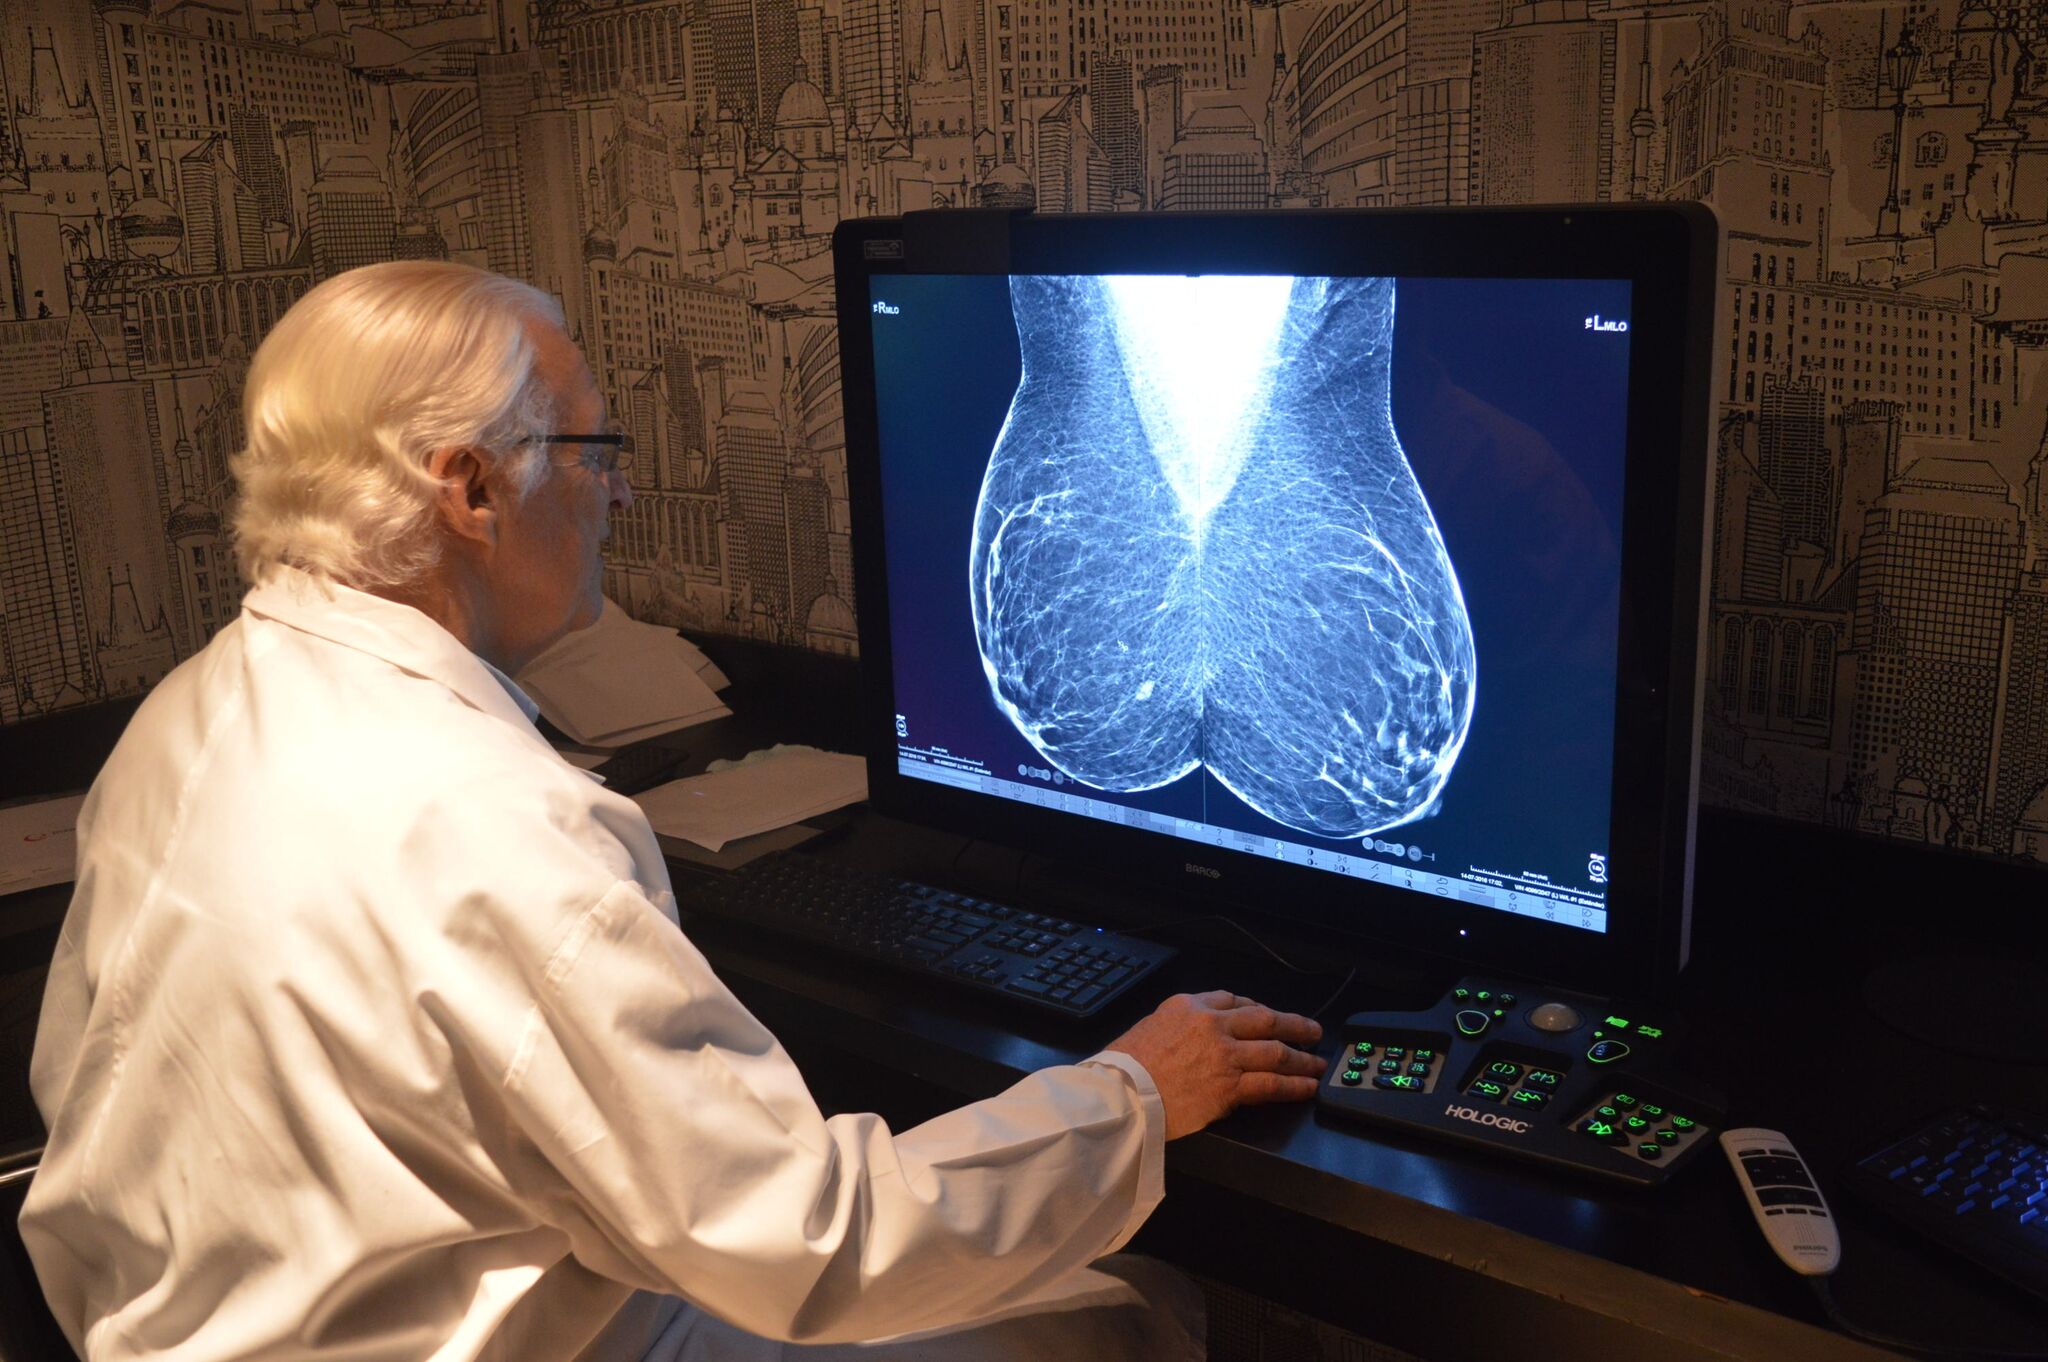 La mamografía permite ver lo que aún no se palpa y detectar cualquier indicio de cáncer de mama. (Foto: Mamotest)